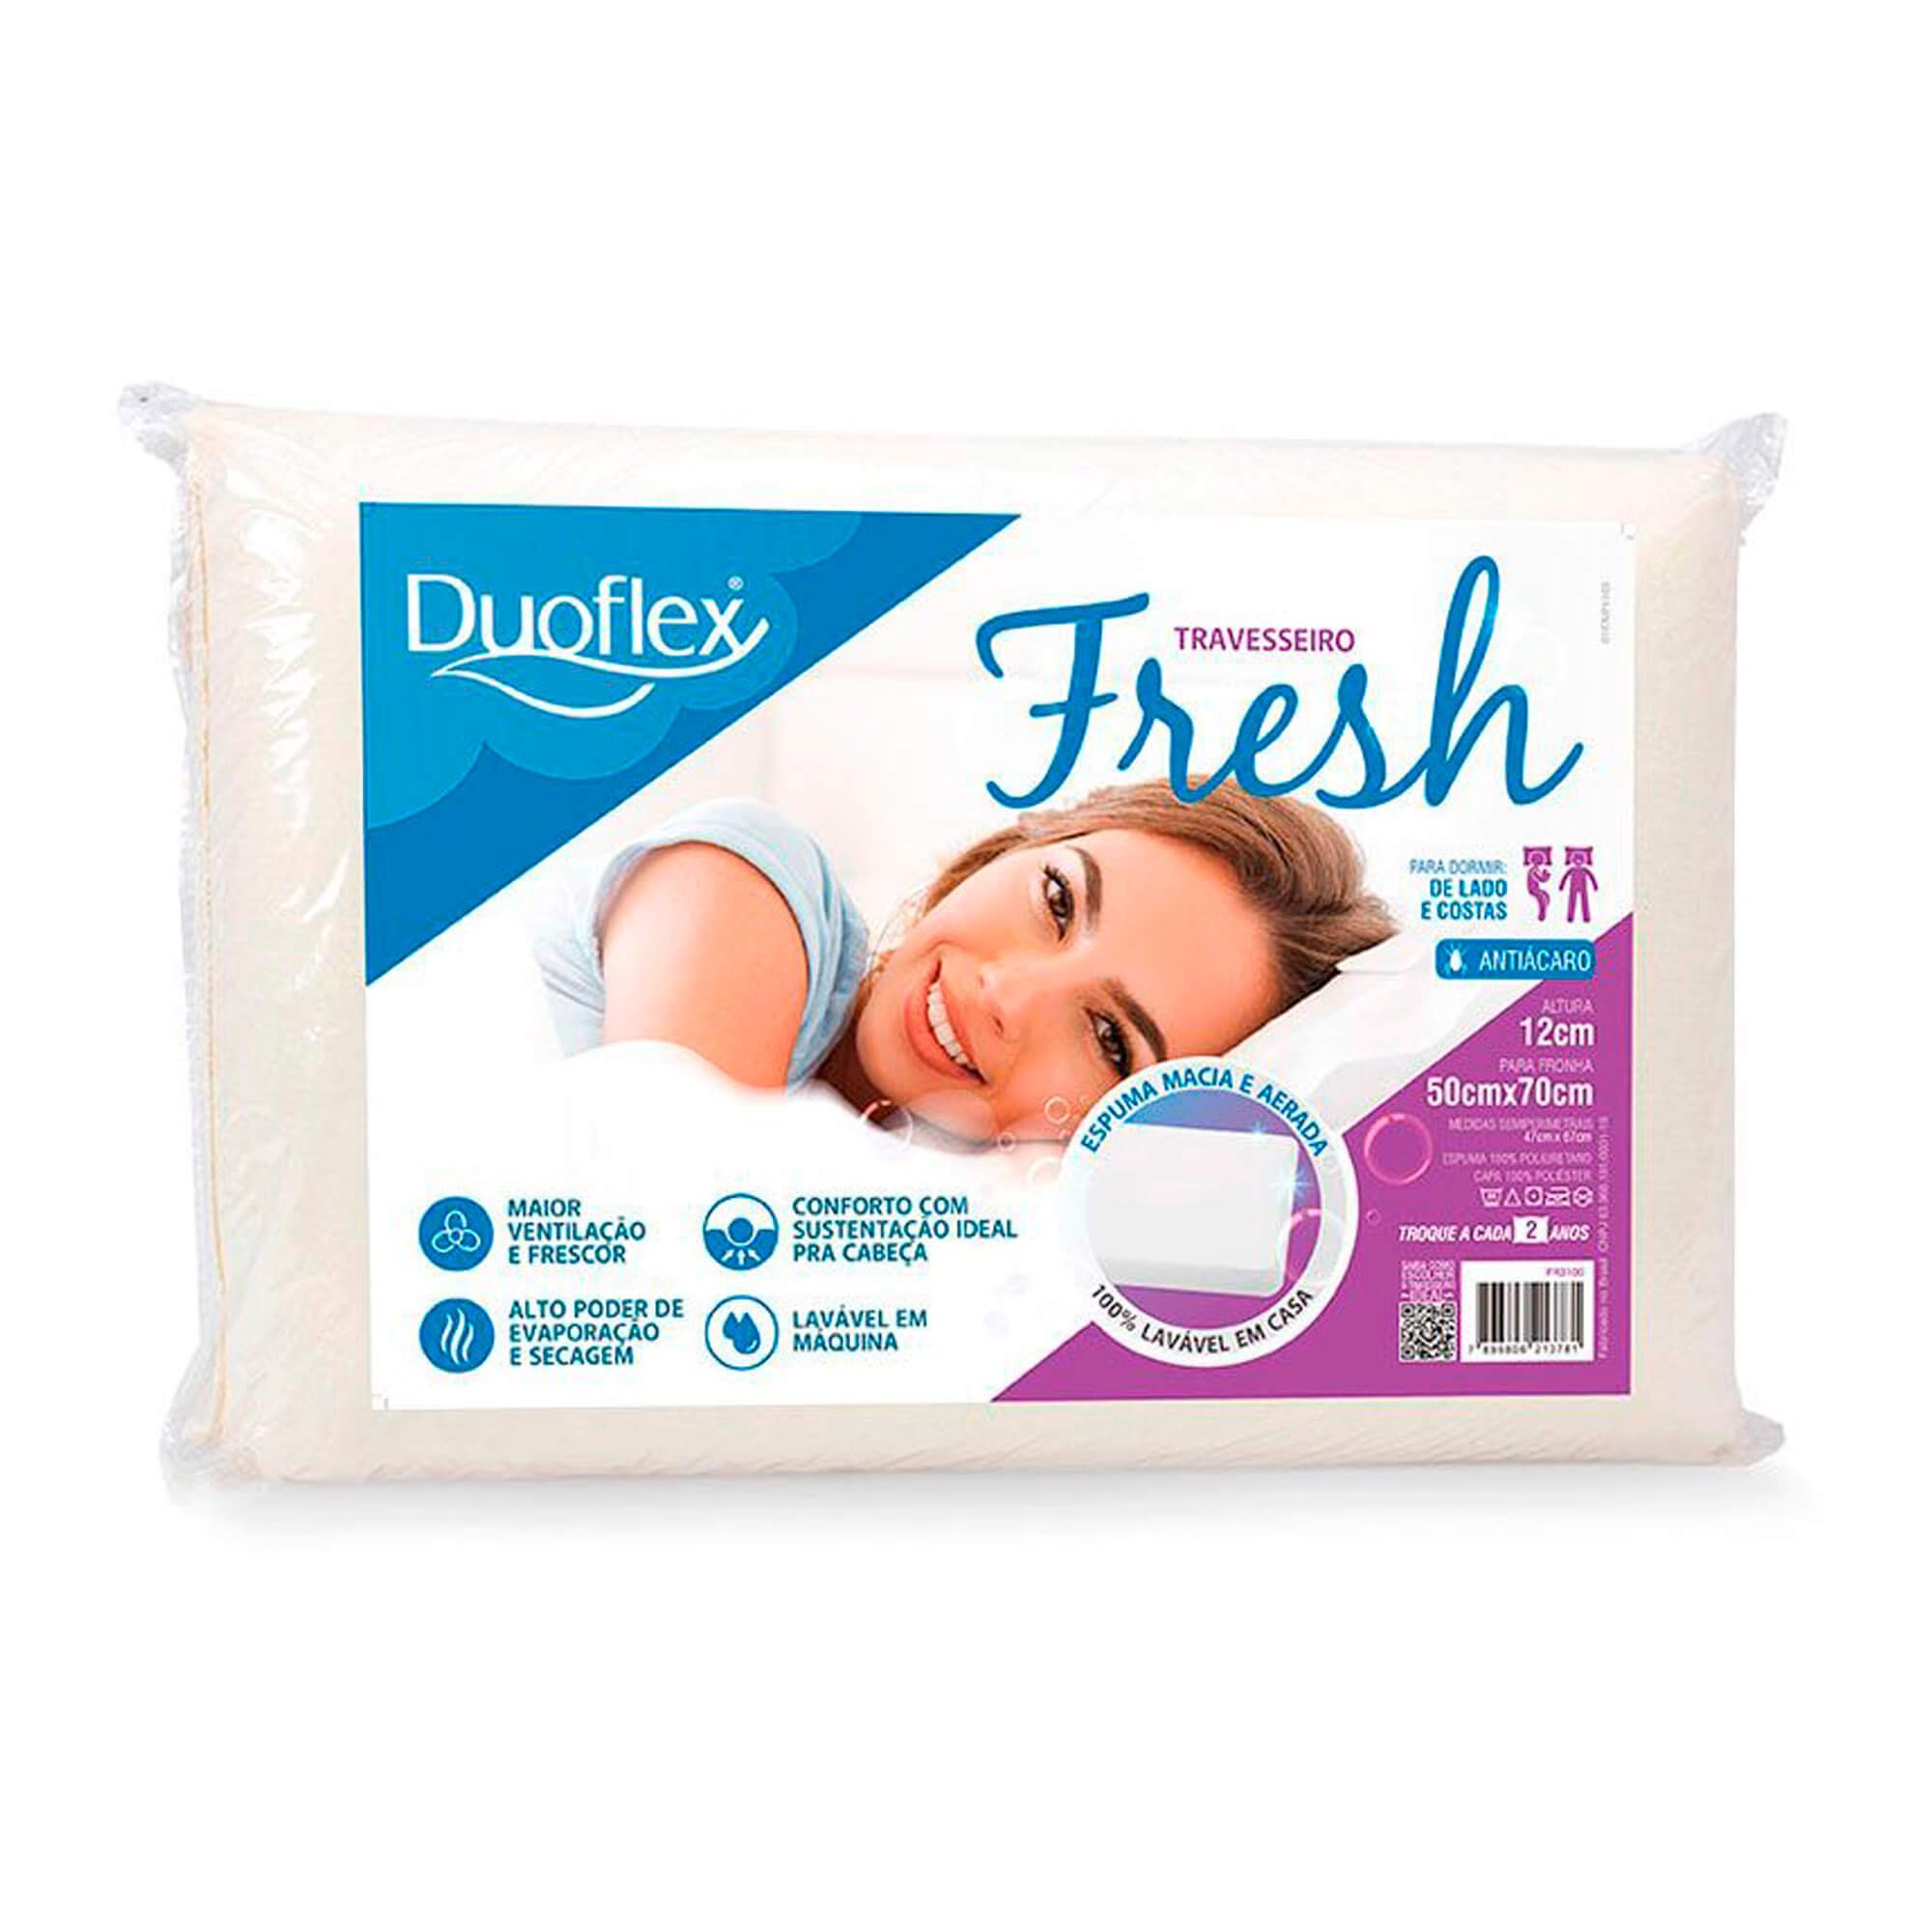 Travesseiro Duoflex Fresh 12 cm, Lavável, Firme, 50 x 70 cm - 2